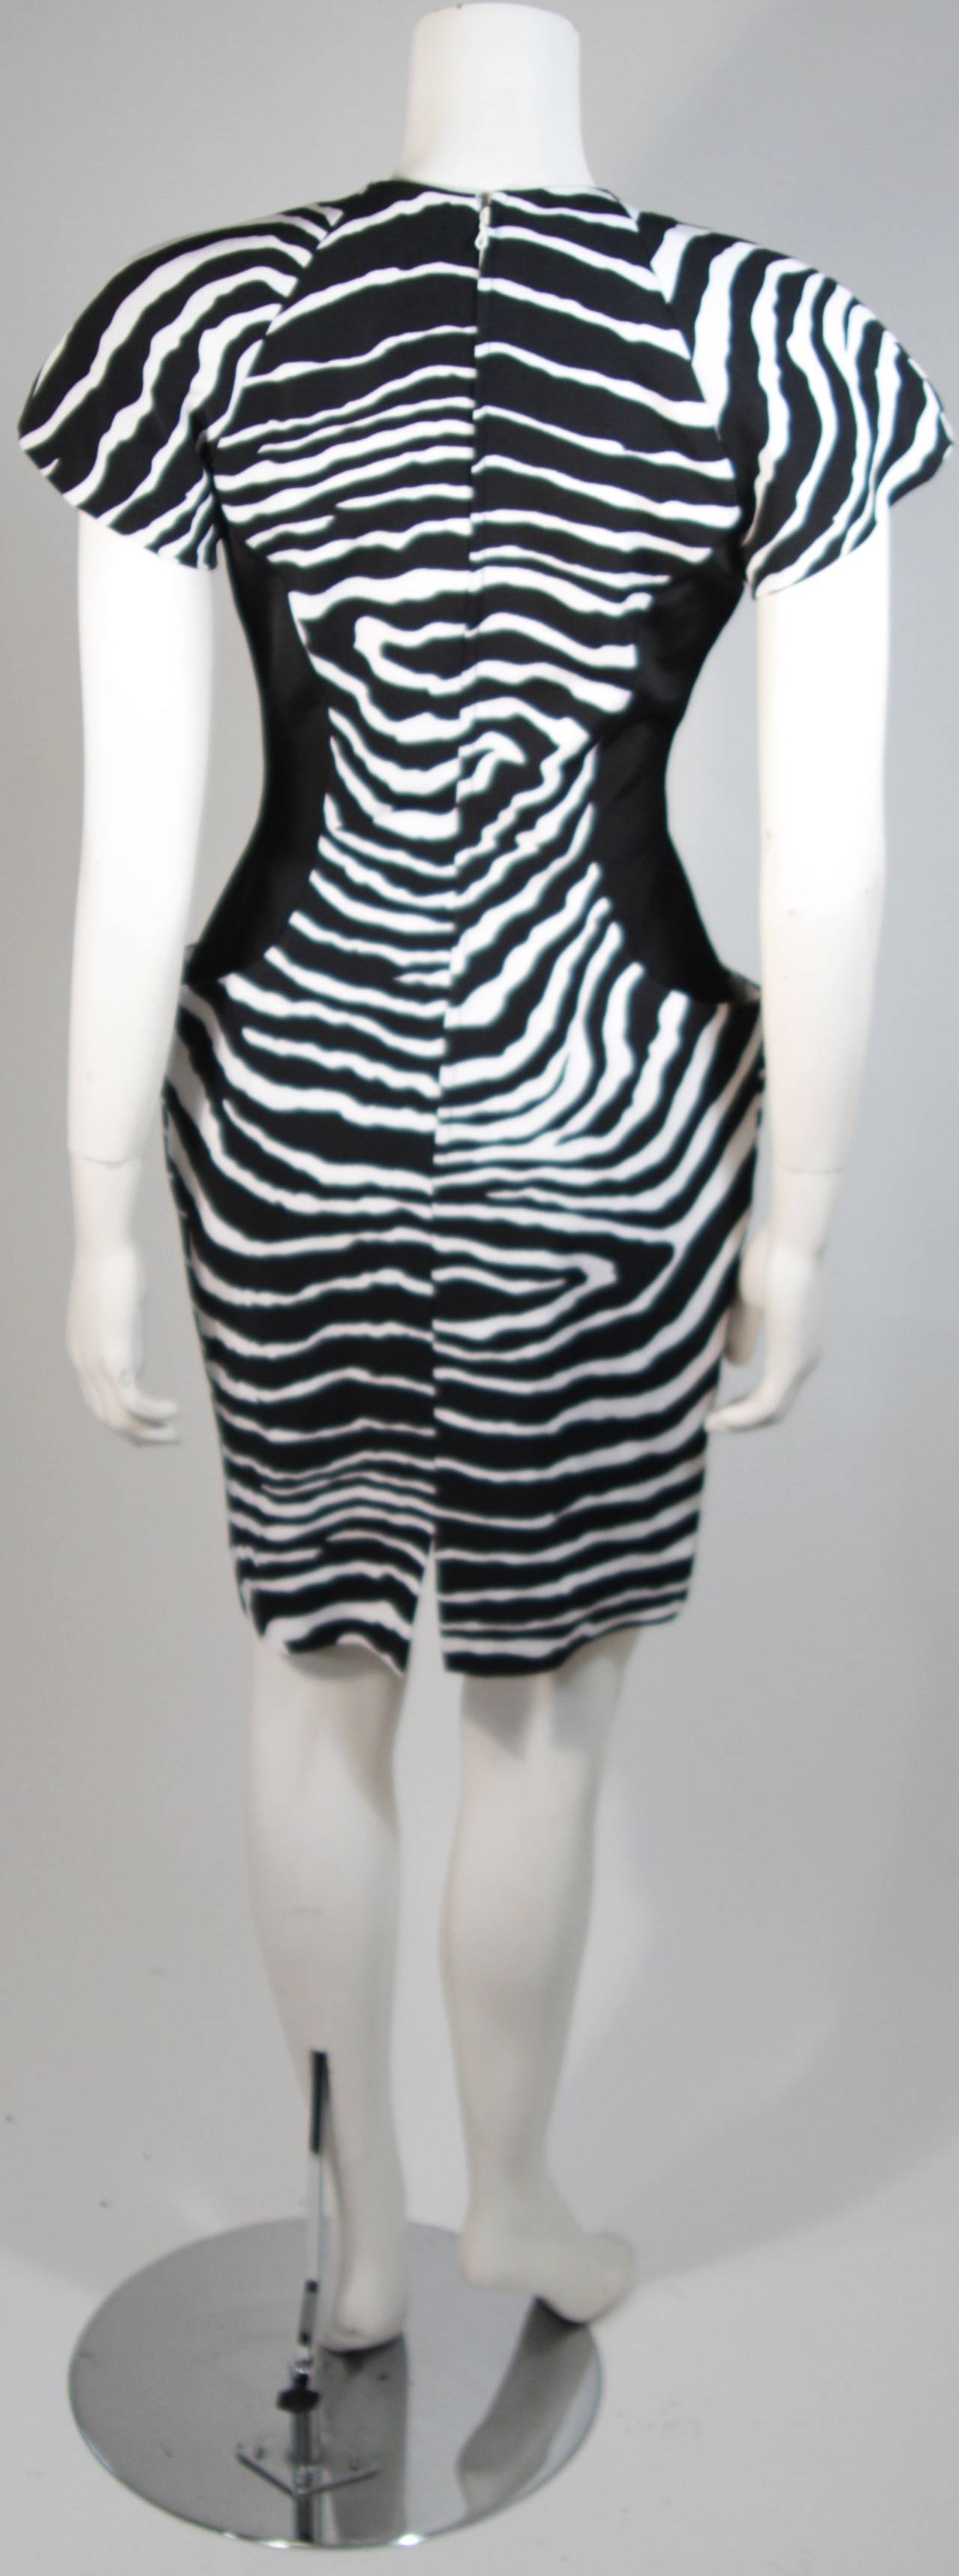 Vicky Tiel Black and White Zebra Patterned Cocktail Dress Size Small 4